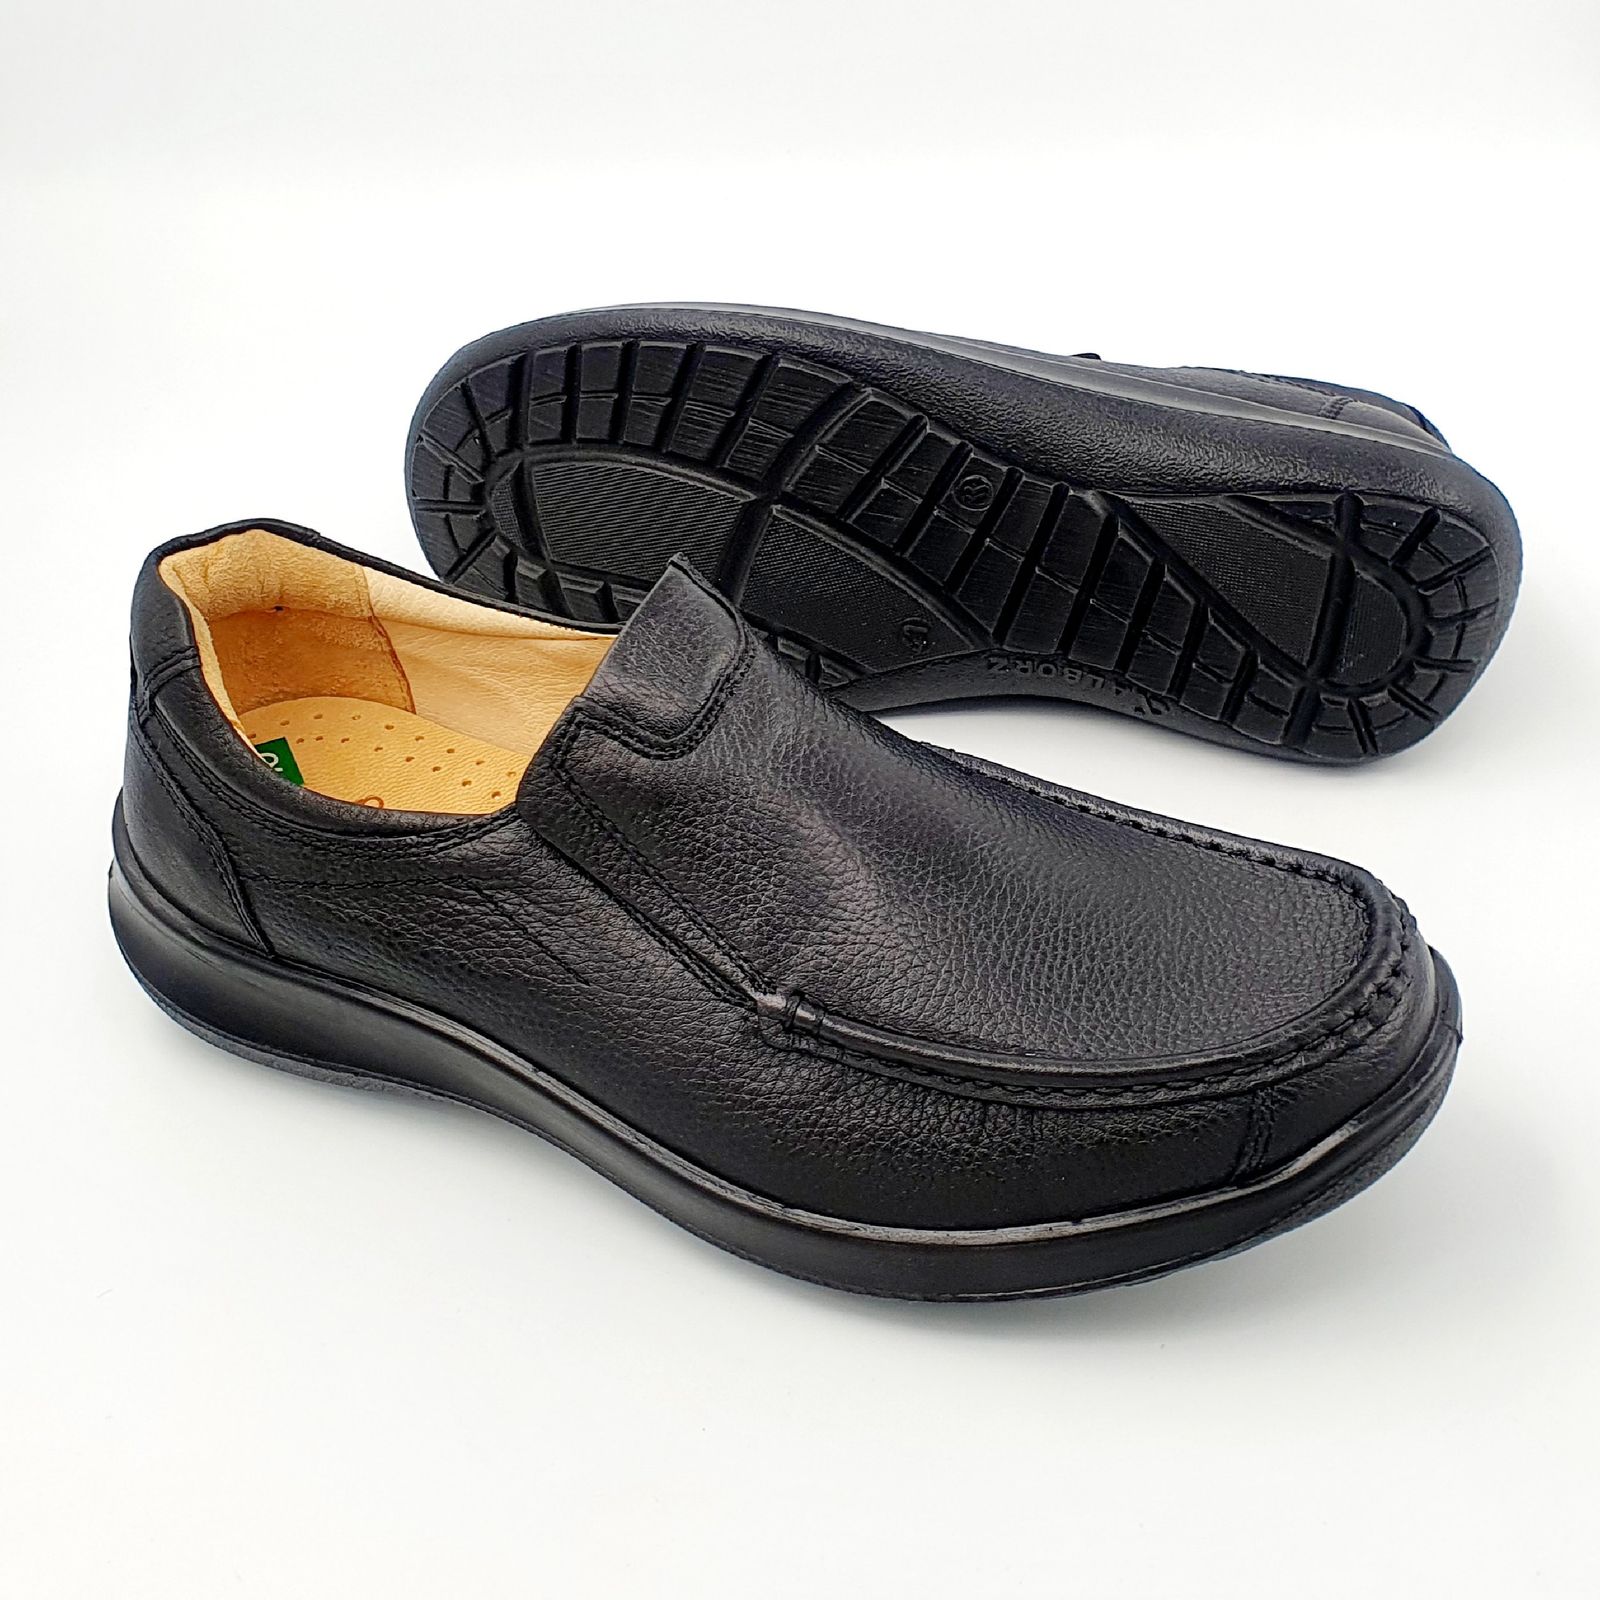 کفش روزمره مردانه شرکت کفش البرز مدل KV کد 2383-2 -  - 6